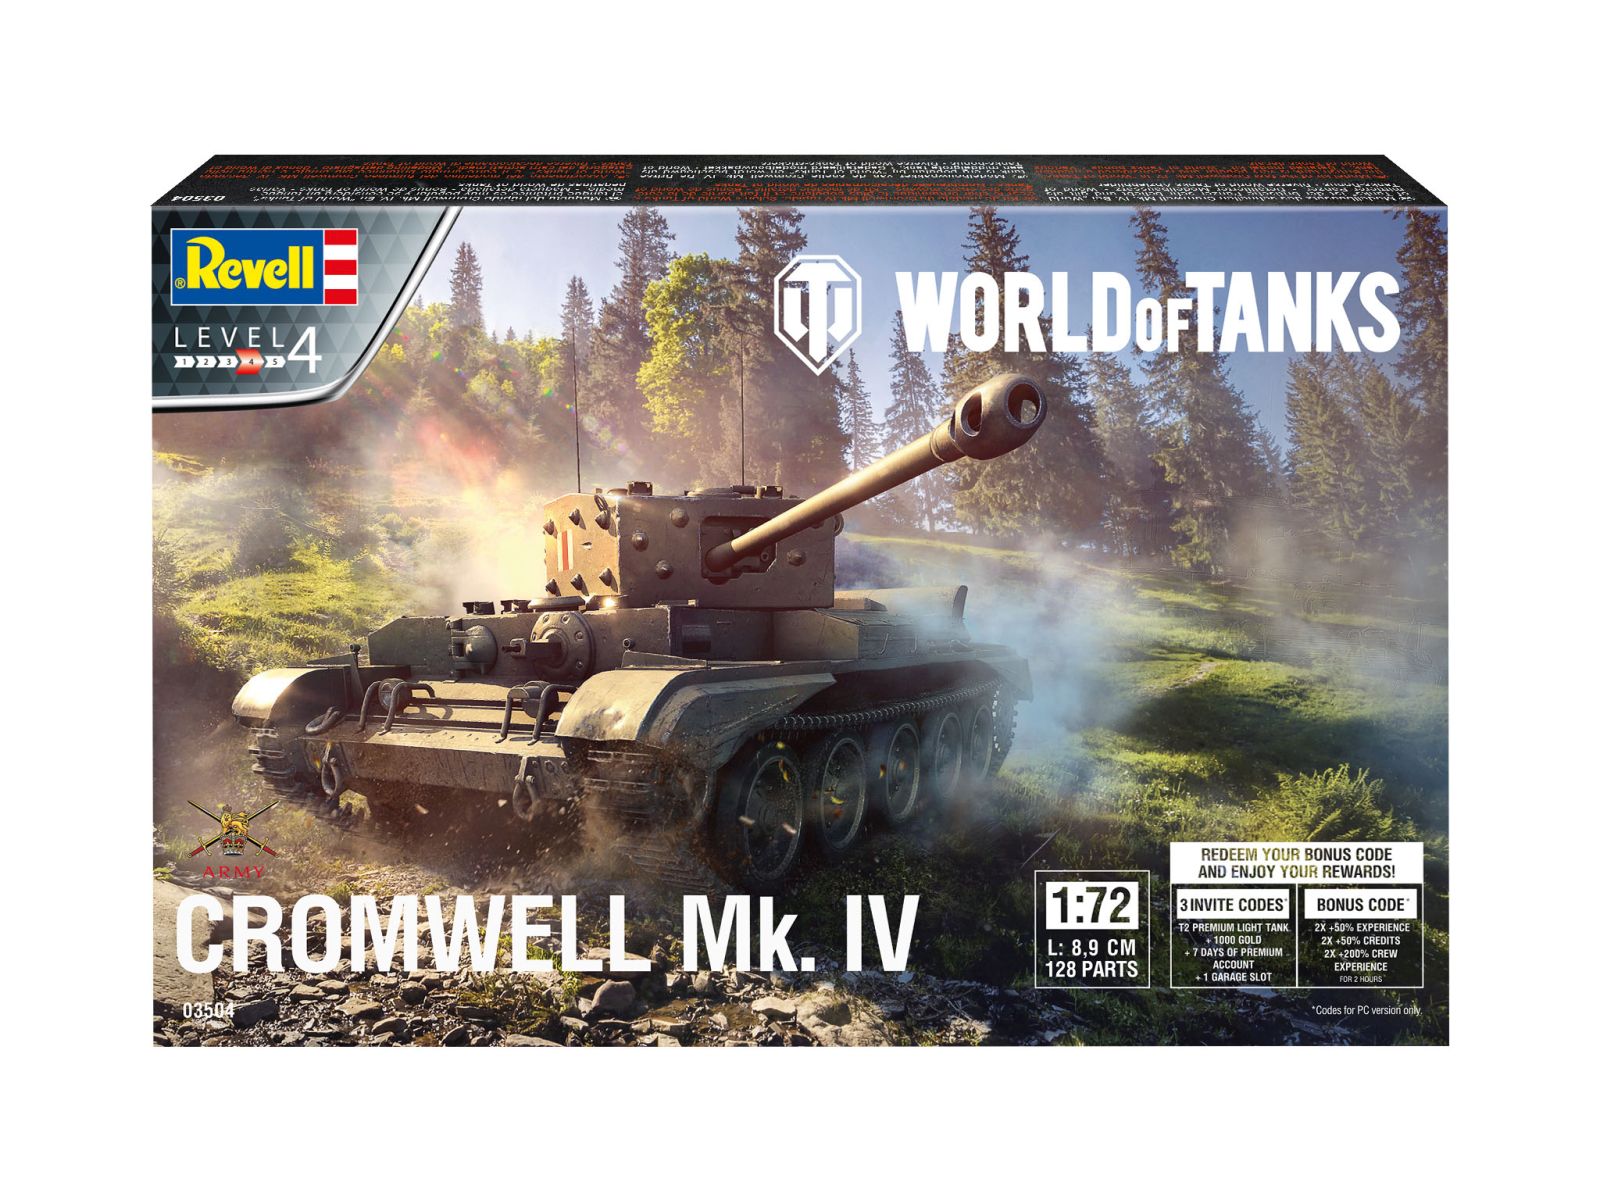 Revell 03504 - Cromwell Mk. IV "World of Tanks"